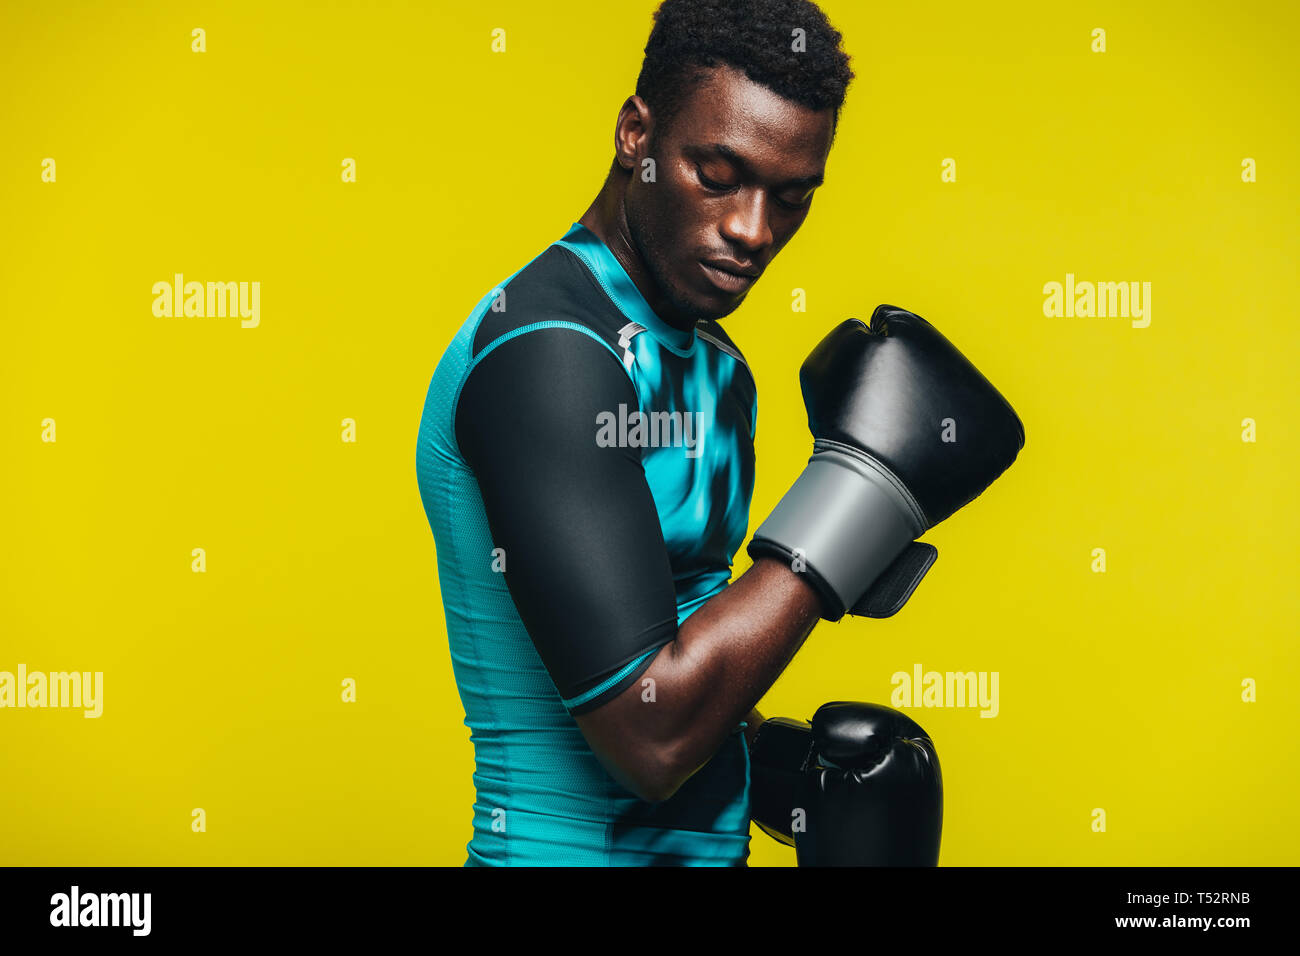 Afrikanischer Mann mit Boxhandschuhen gegen gelben Hintergrund. Passen junge männliche Boxer üben. Stockfoto